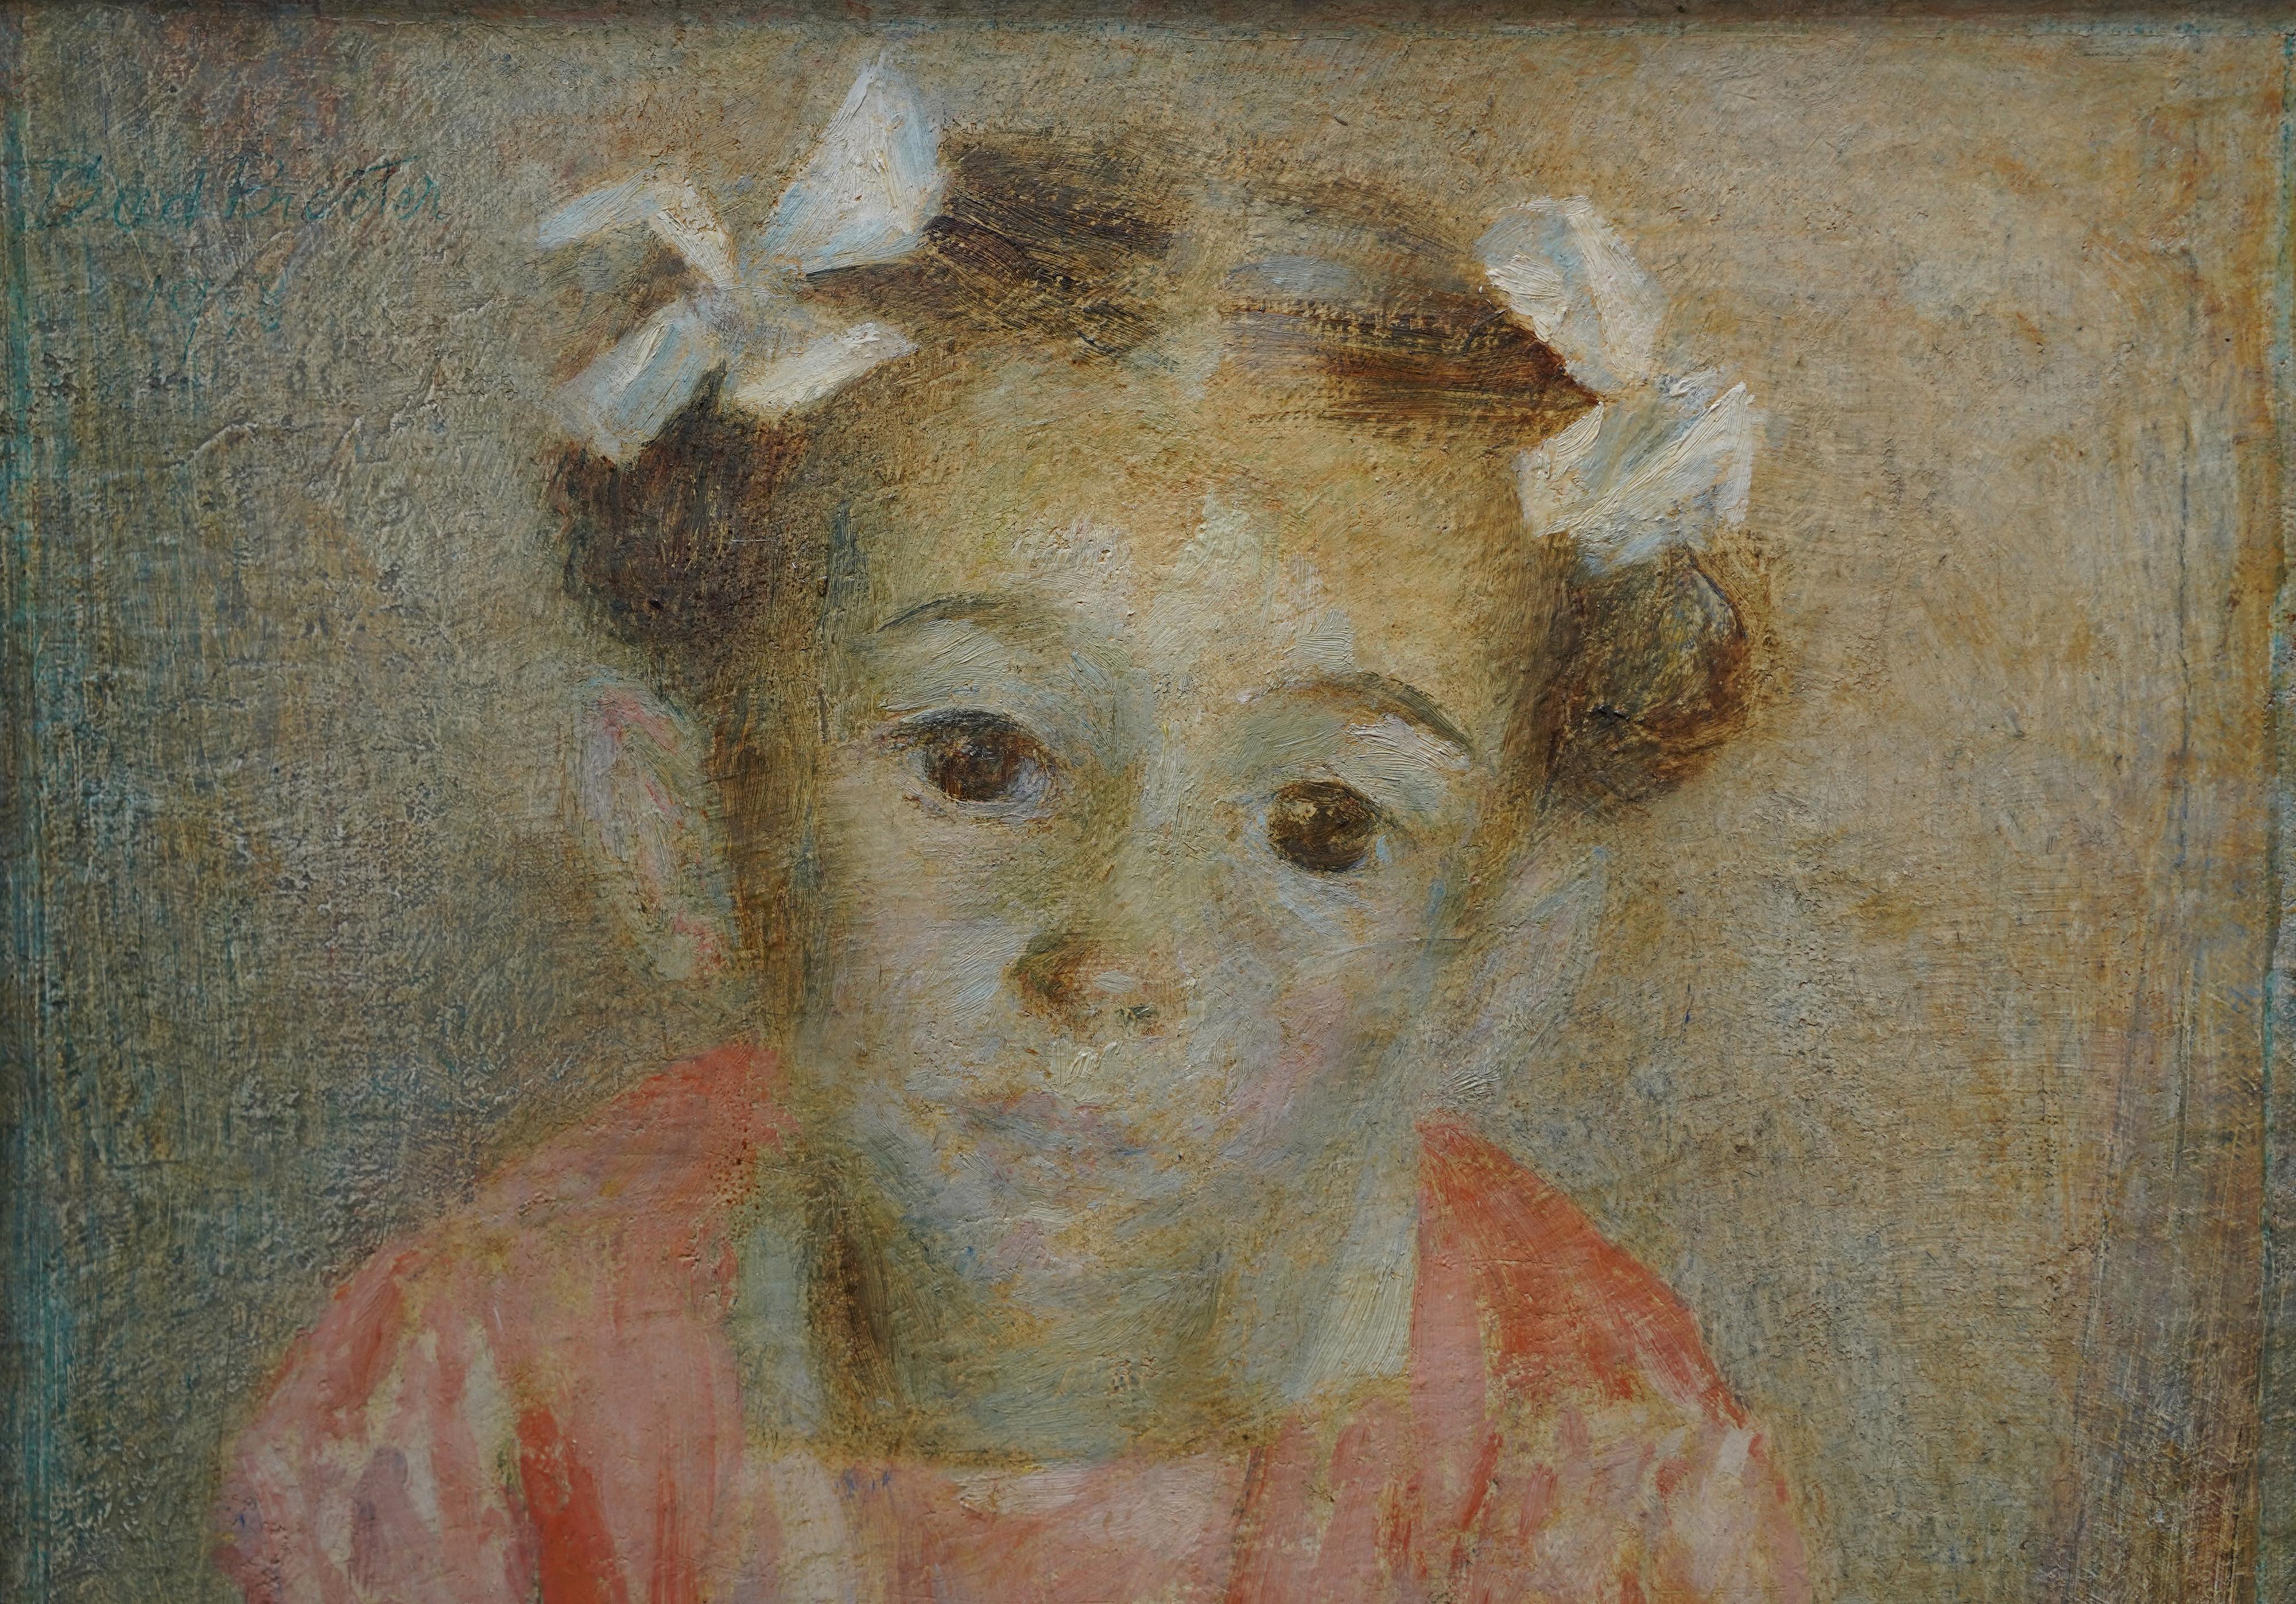 Ce charmant portrait à l'huile britannique est l'œuvre de l'artiste féminine Dod Procter. Elle a été peinte en 1949 et exposée à la Royal Academy de Londres la même année. Le tableau représente une petite fille en robe de soirée pêche, avec des